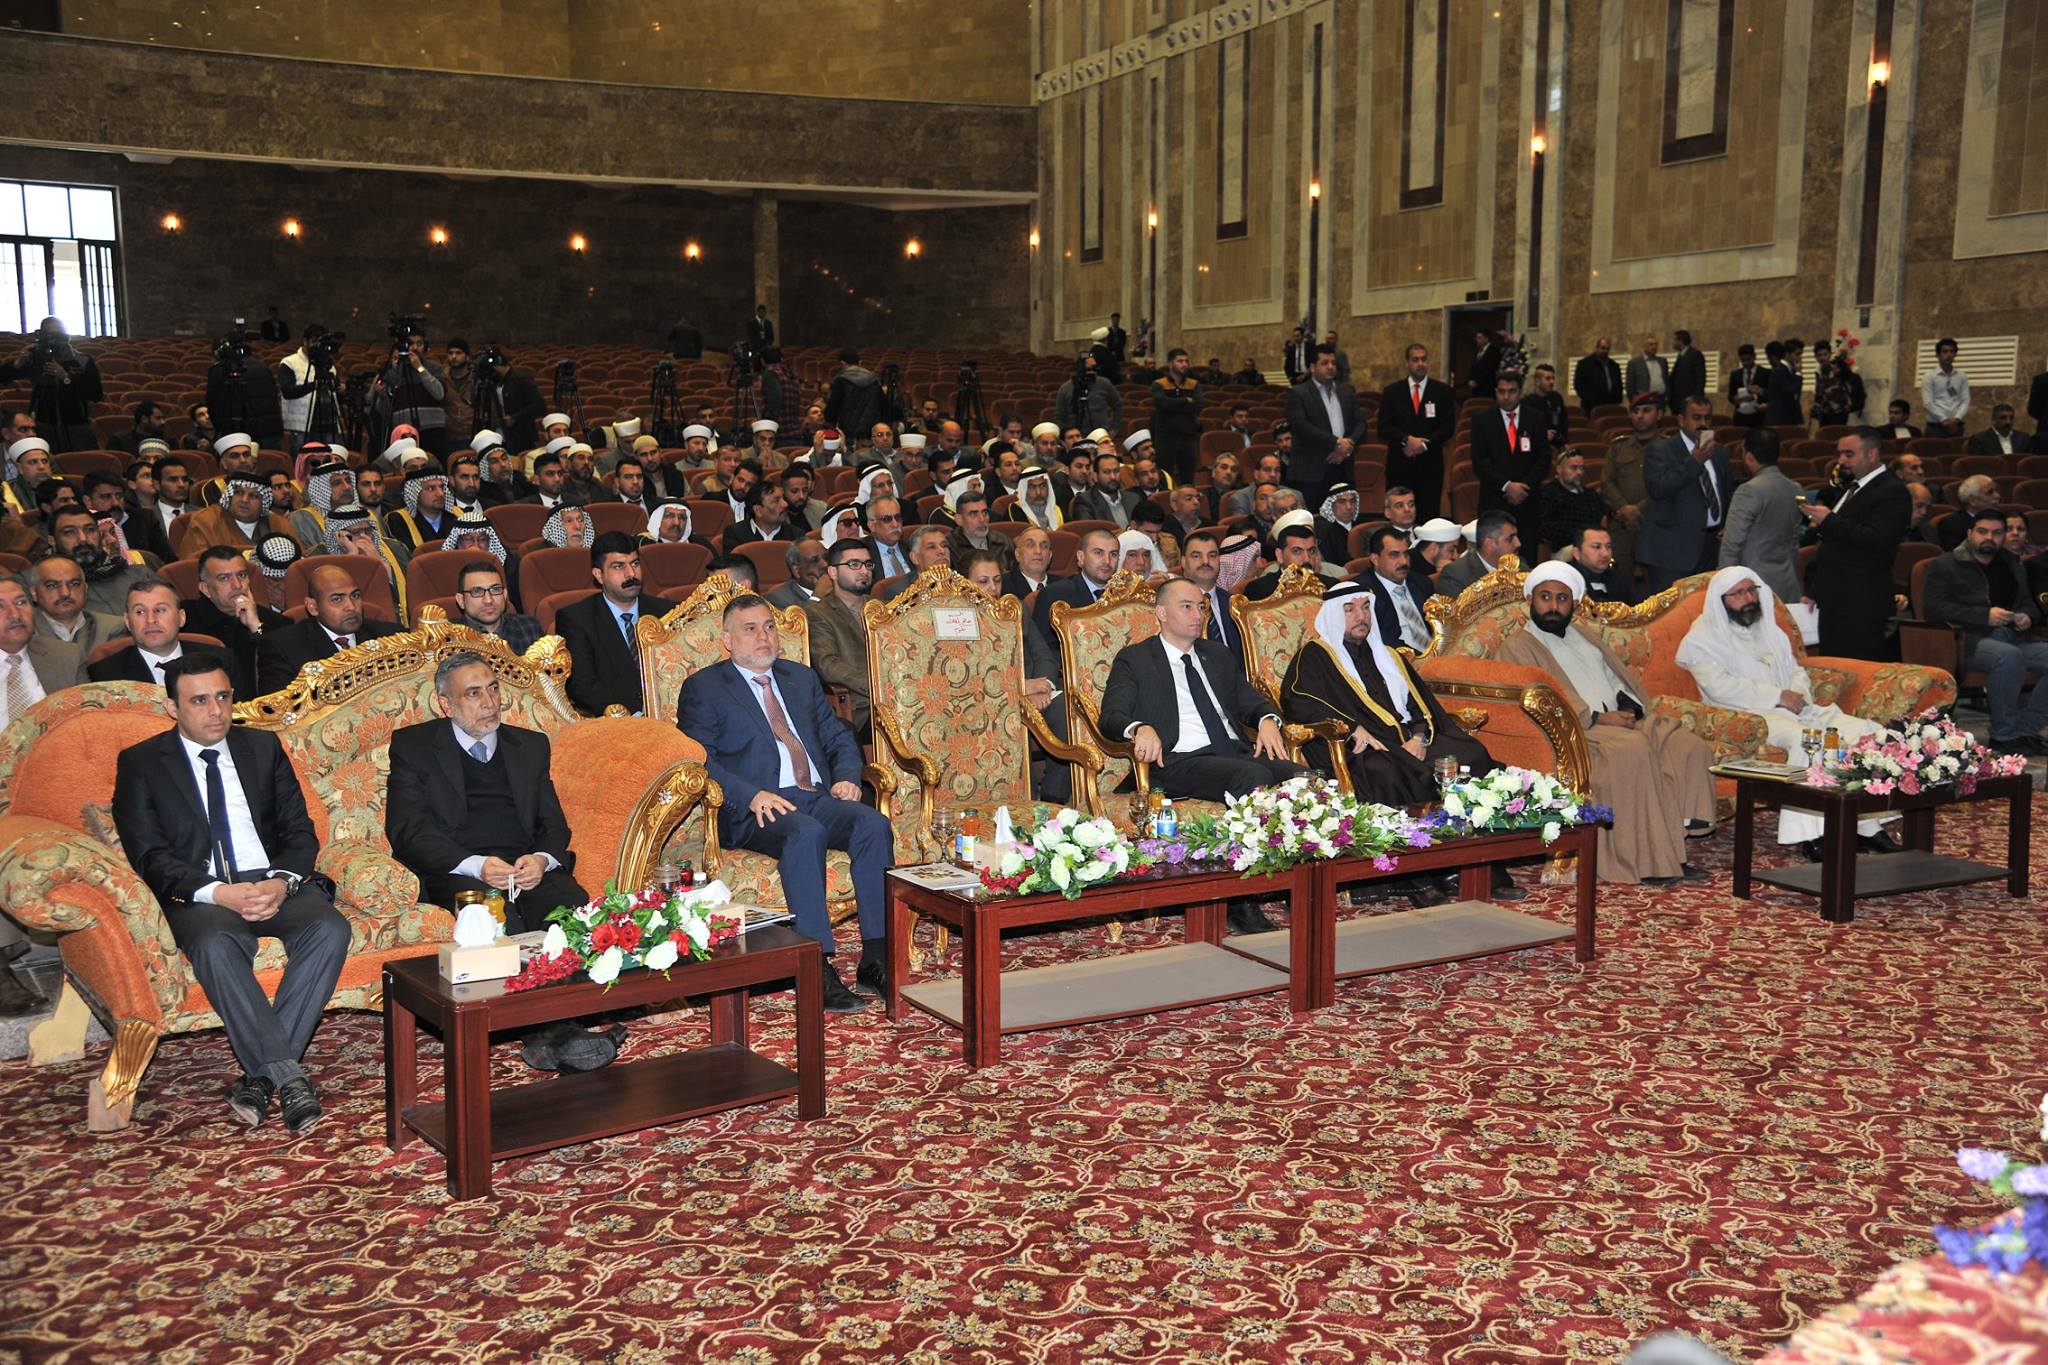 ديوان الوقف السني يحتضن المؤتمر الوطني للاديان والمذاهب في العراق بنسخته الثالثة (7)